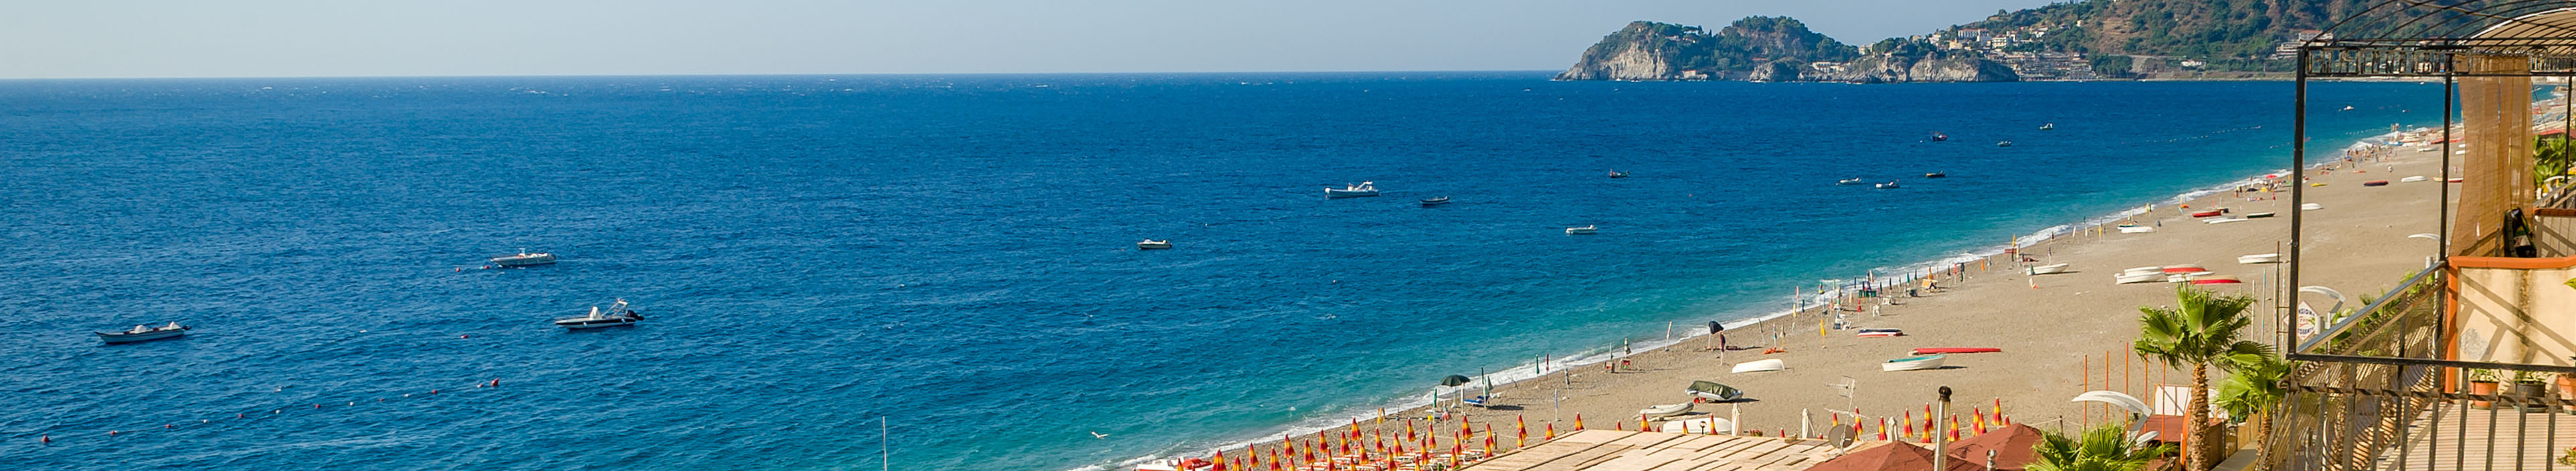 Strand auf Sizilien, Sonnenliegen, Sonnenschirme, Palmen, Boote auf dem Meer.